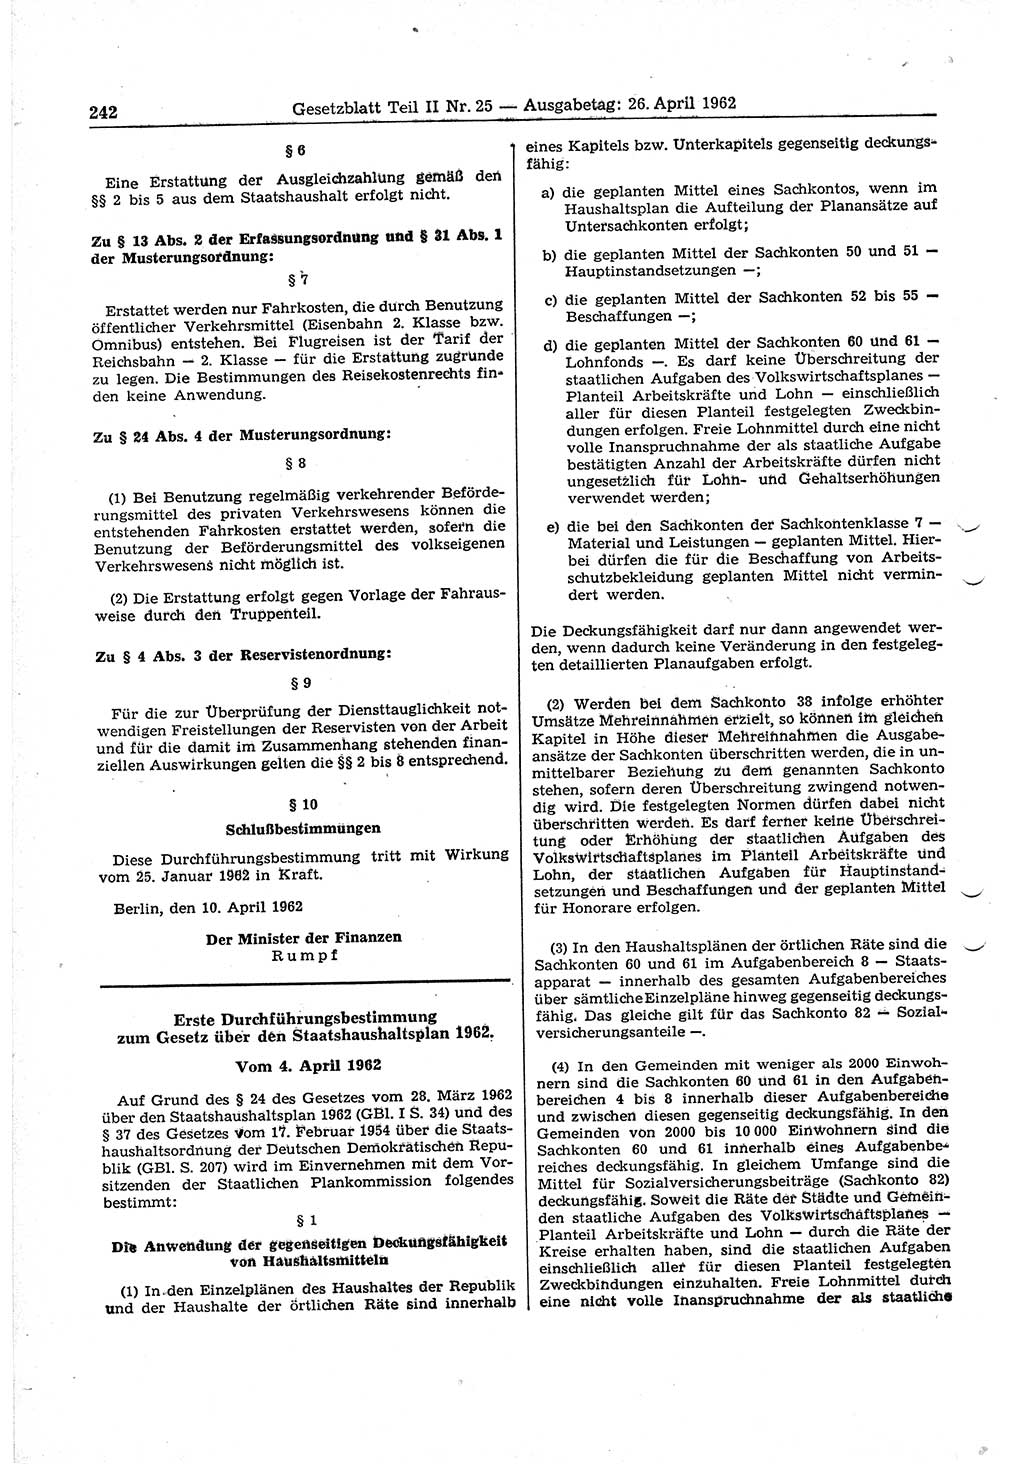 Gesetzblatt (GBl.) der Deutschen Demokratischen Republik (DDR) Teil ⅠⅠ 1962, Seite 242 (GBl. DDR ⅠⅠ 1962, S. 242)